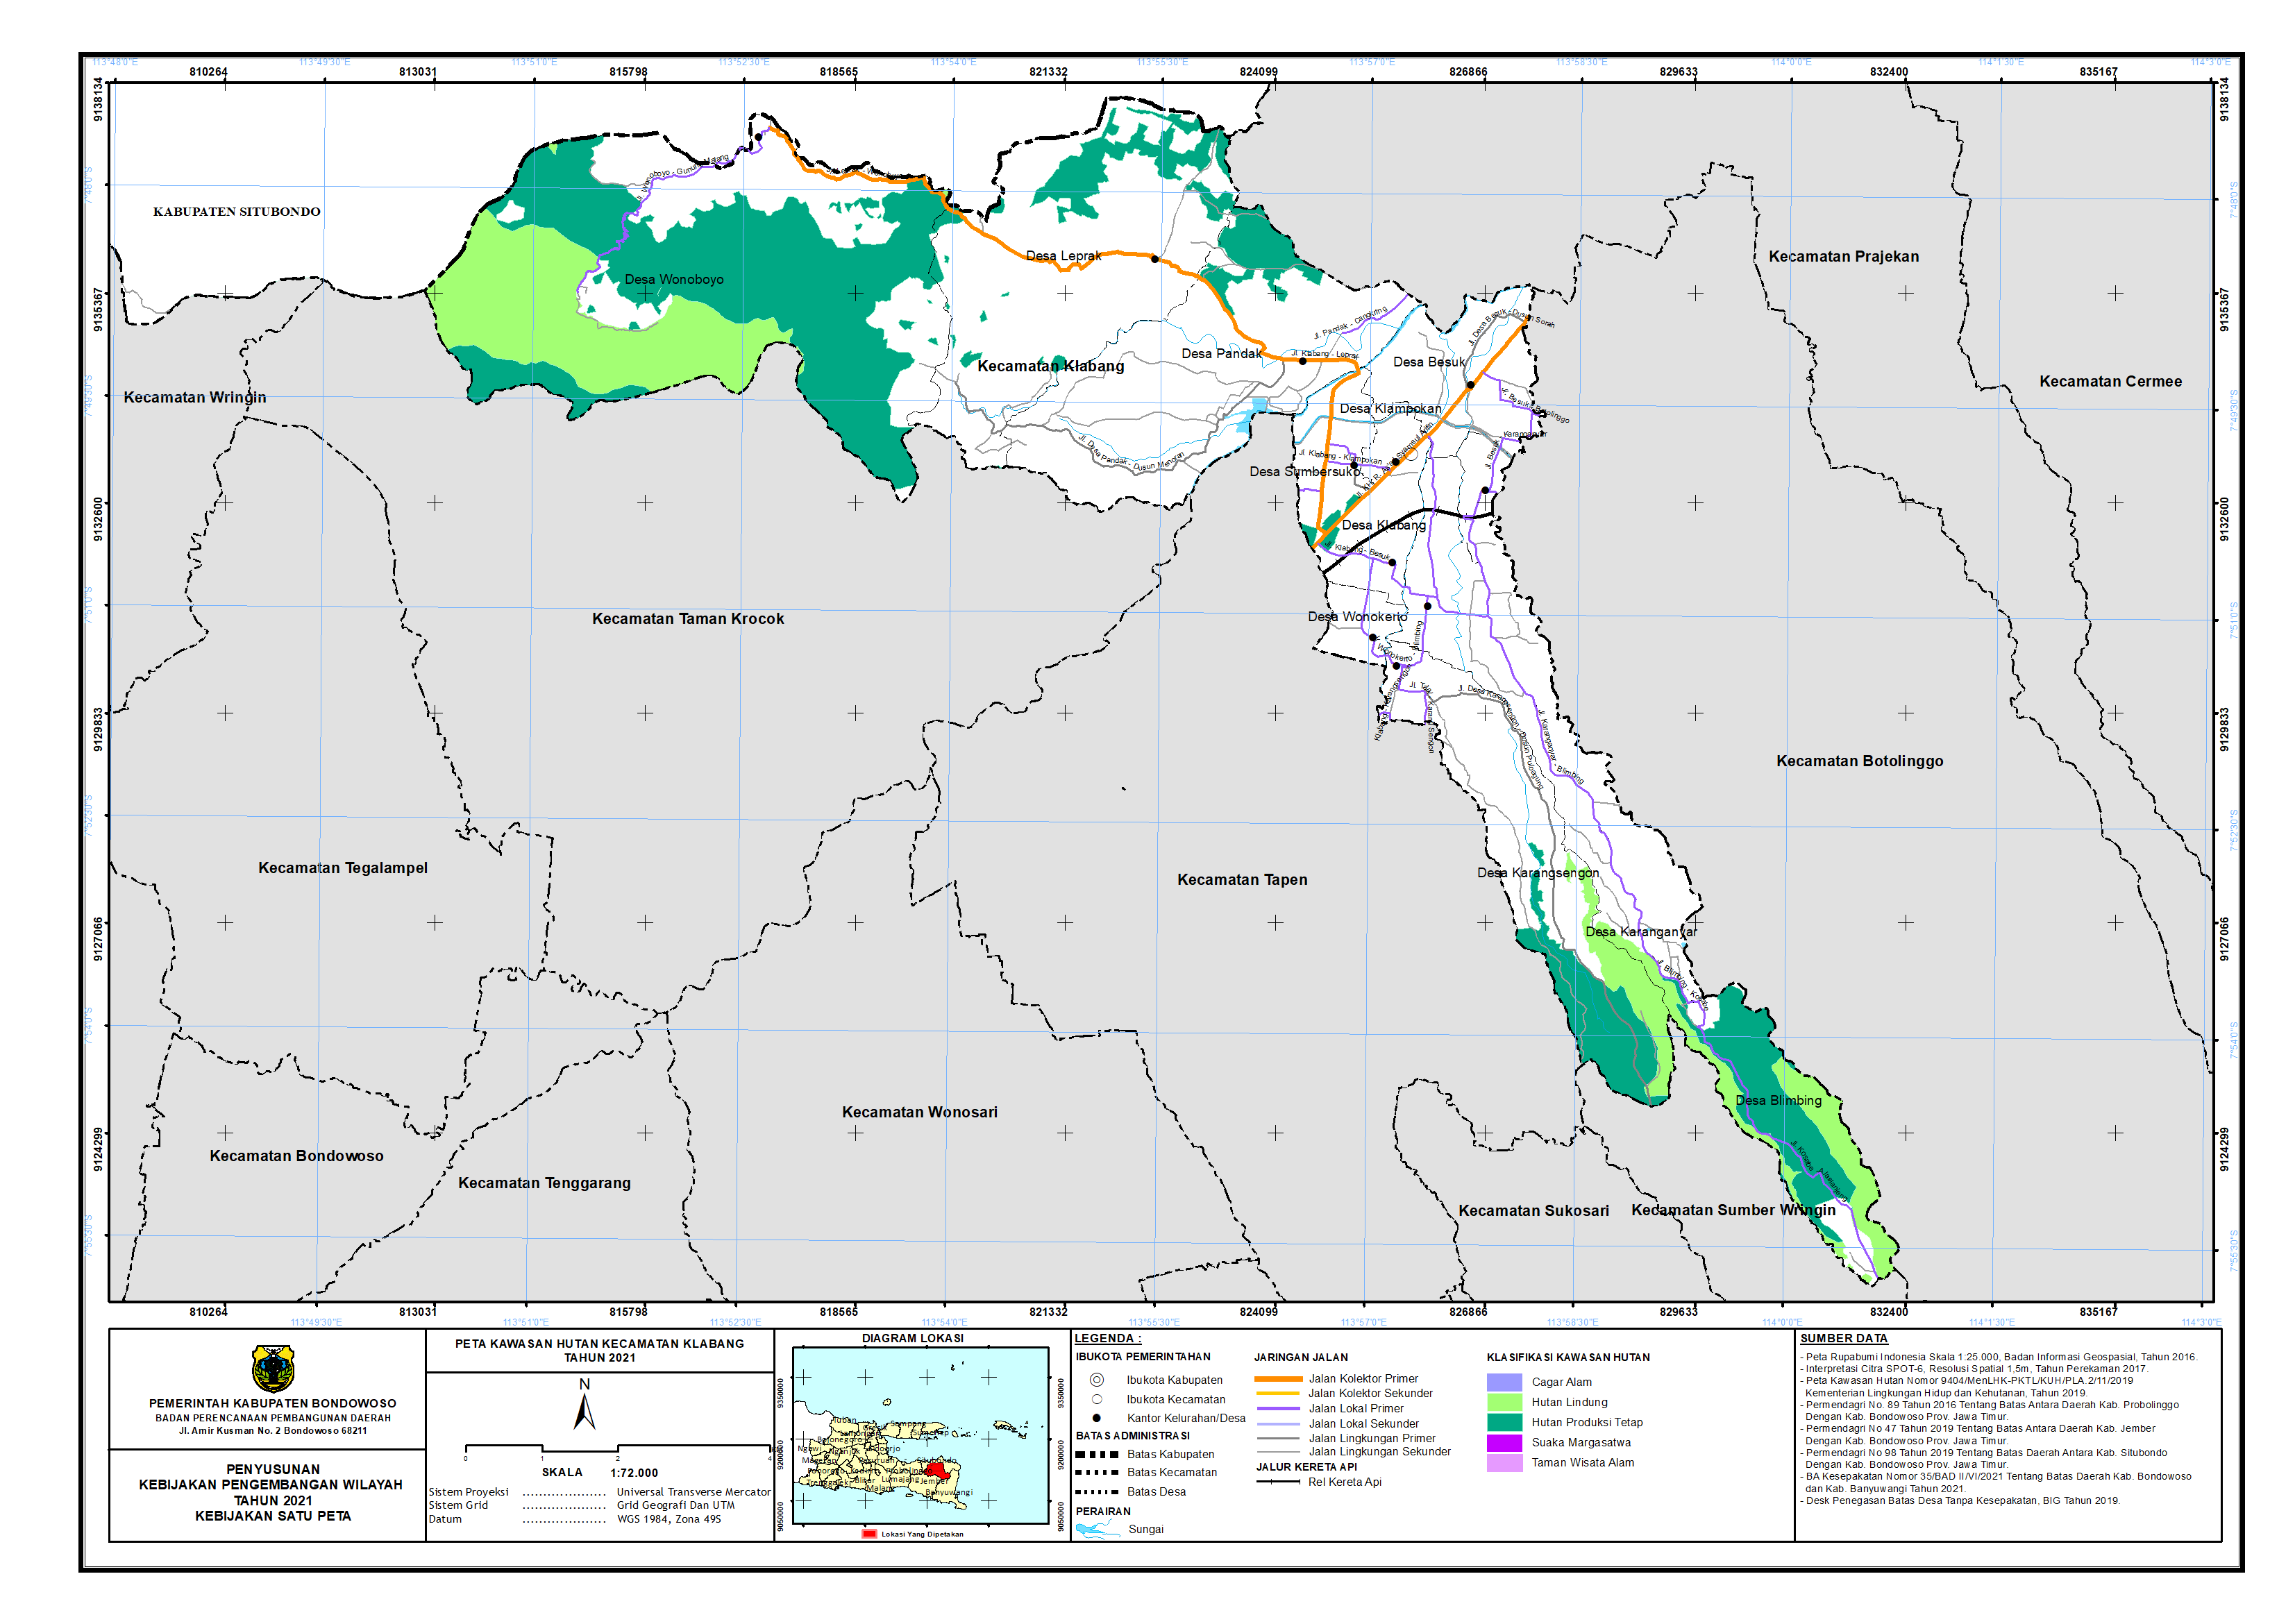 Peta Kawasan Hutan Kecamatan Klabang.png